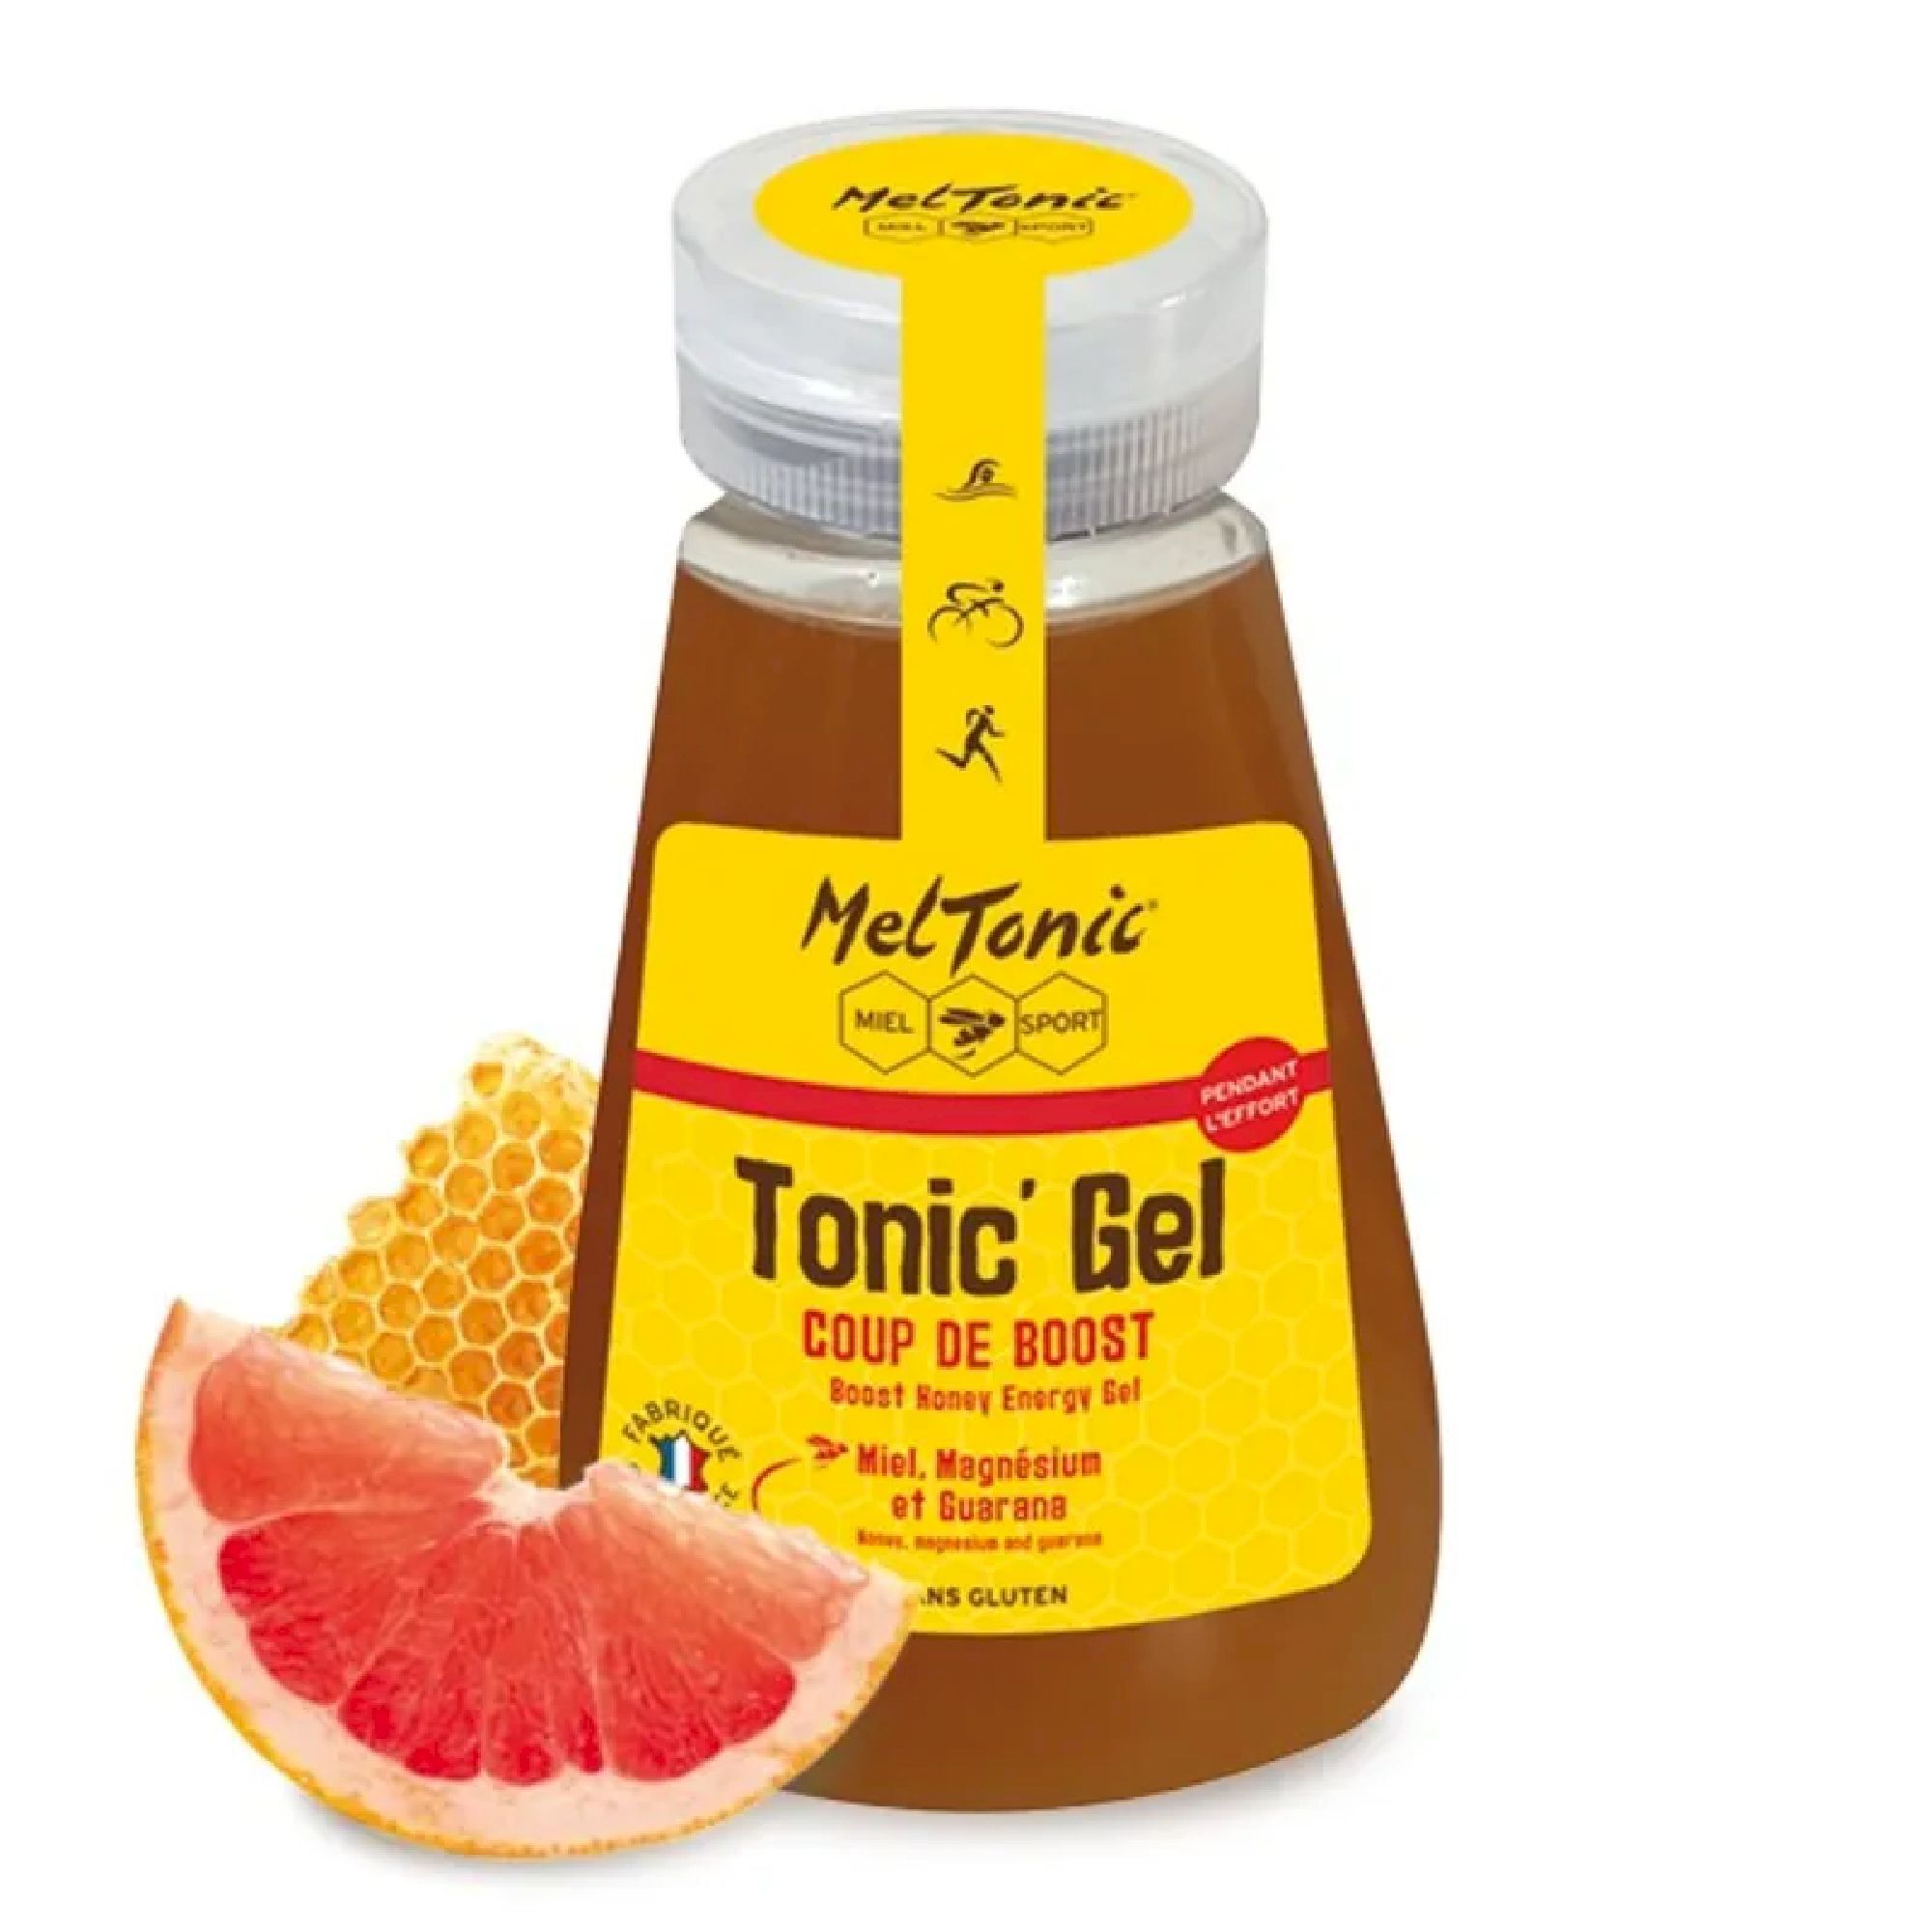 Meltonic Tonic Gel Coup De Boost - Recharge Eco - Energy gel